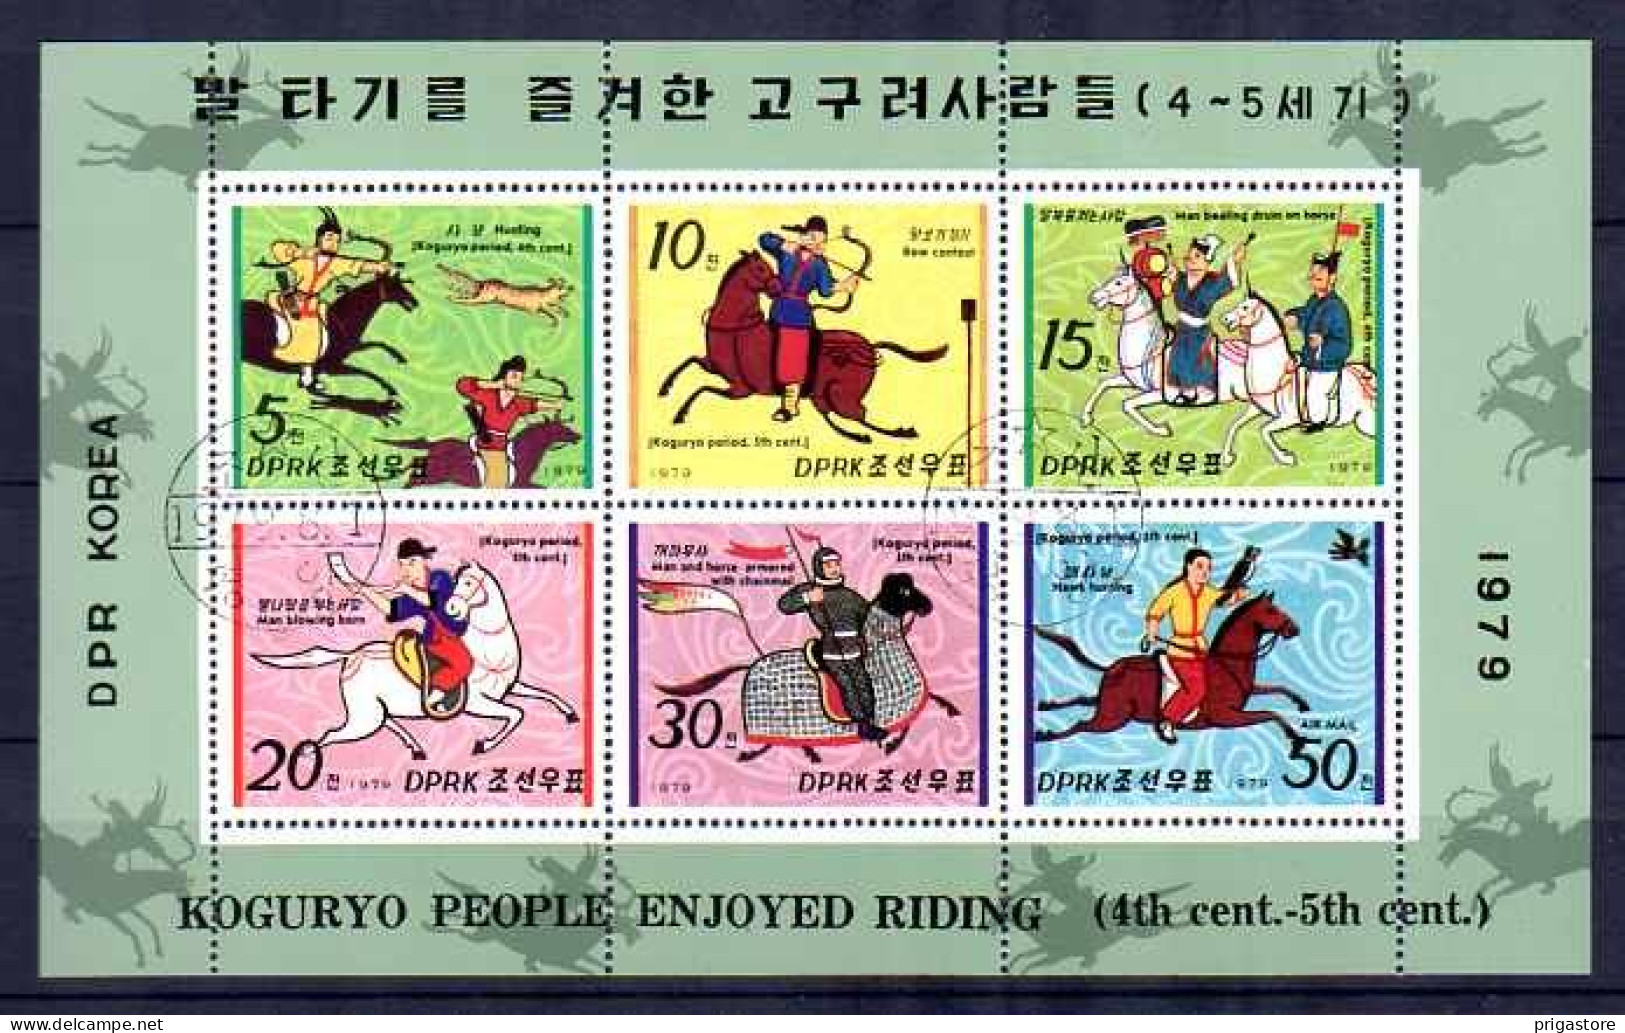 Corée Du Nord 1979 Chevaux (39) Yvert N° 1533 à 1537 Oblitéré Used - Korea, North